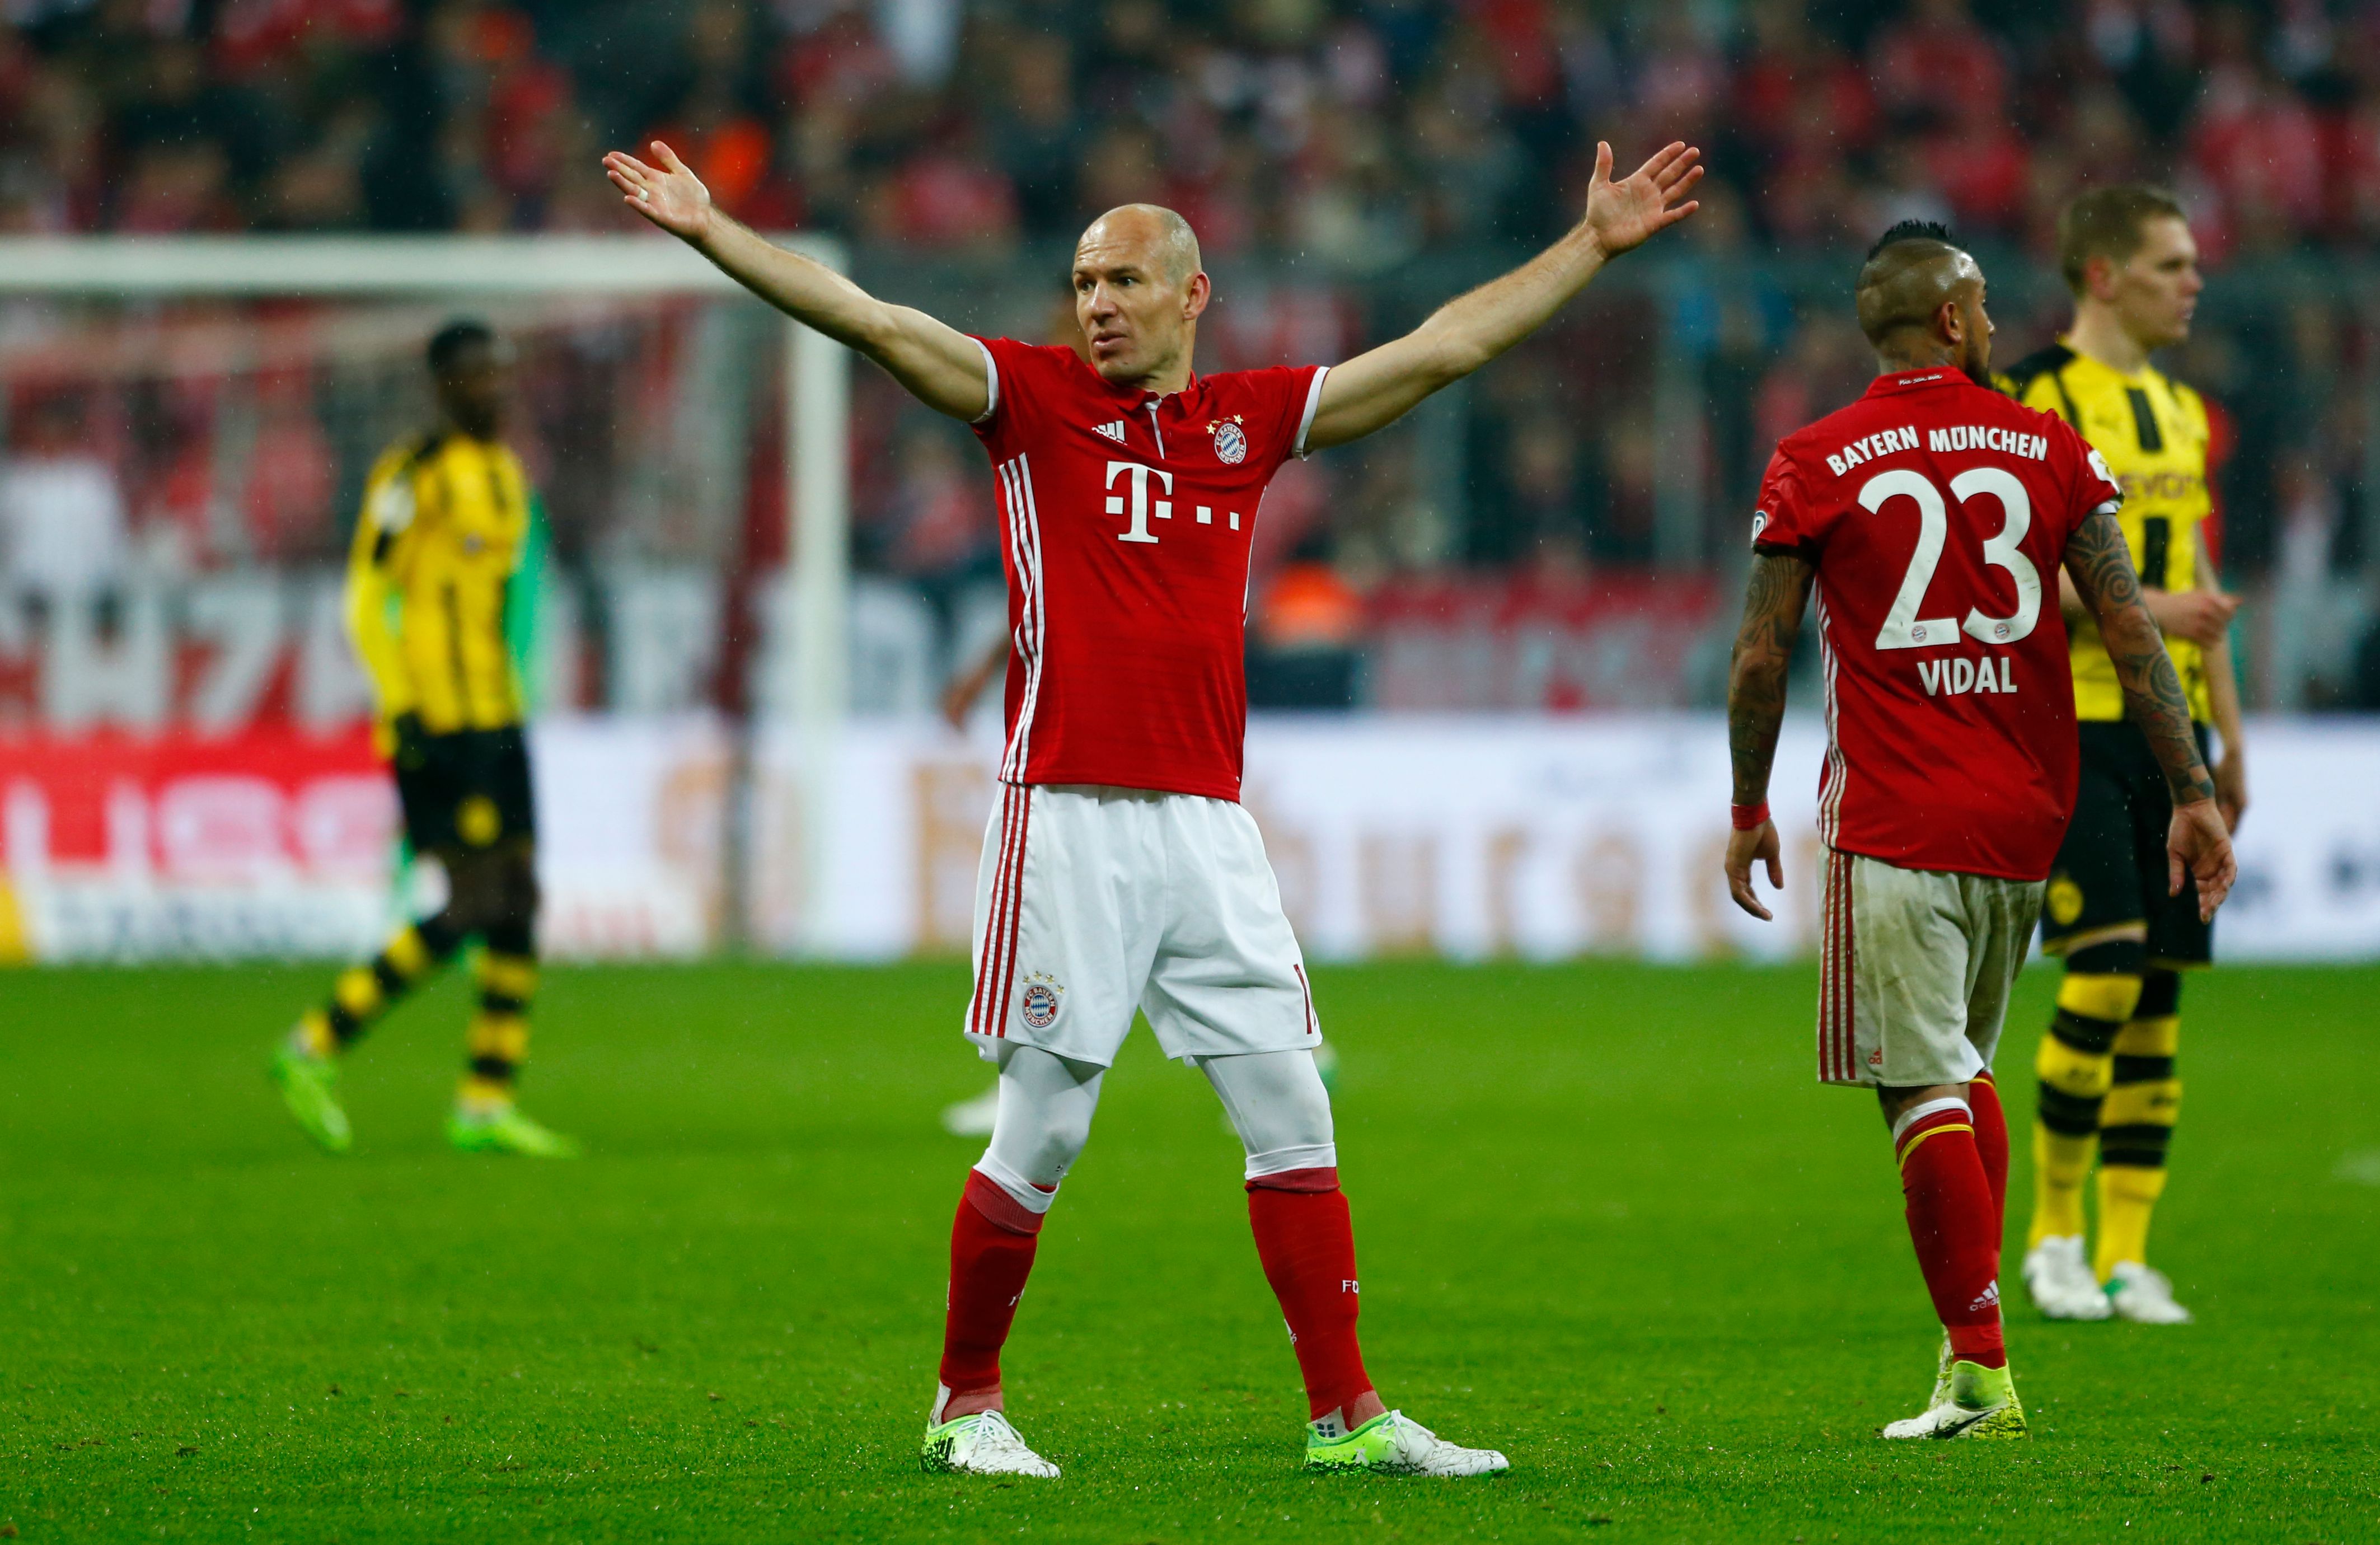 Bayern Munich's Arjen Robben 